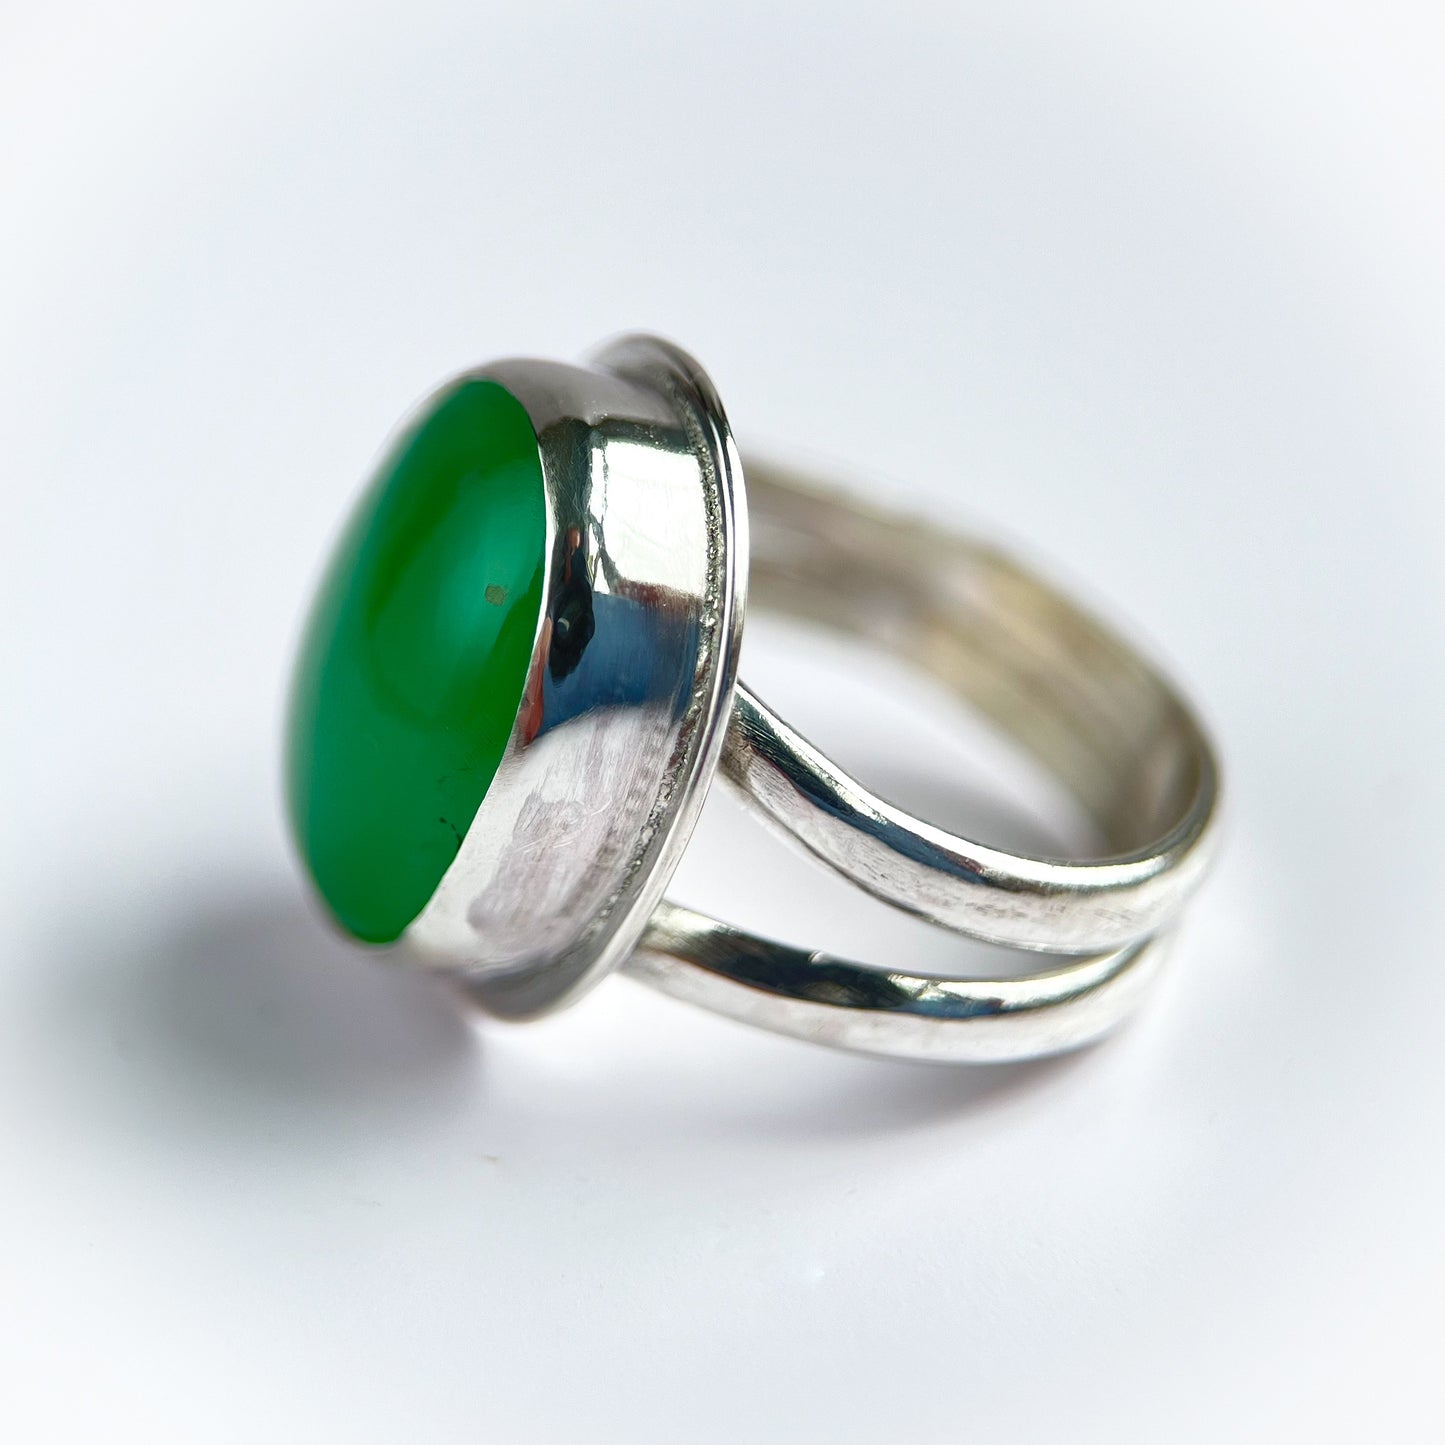 Gemmy Green Chrysoprase Ring